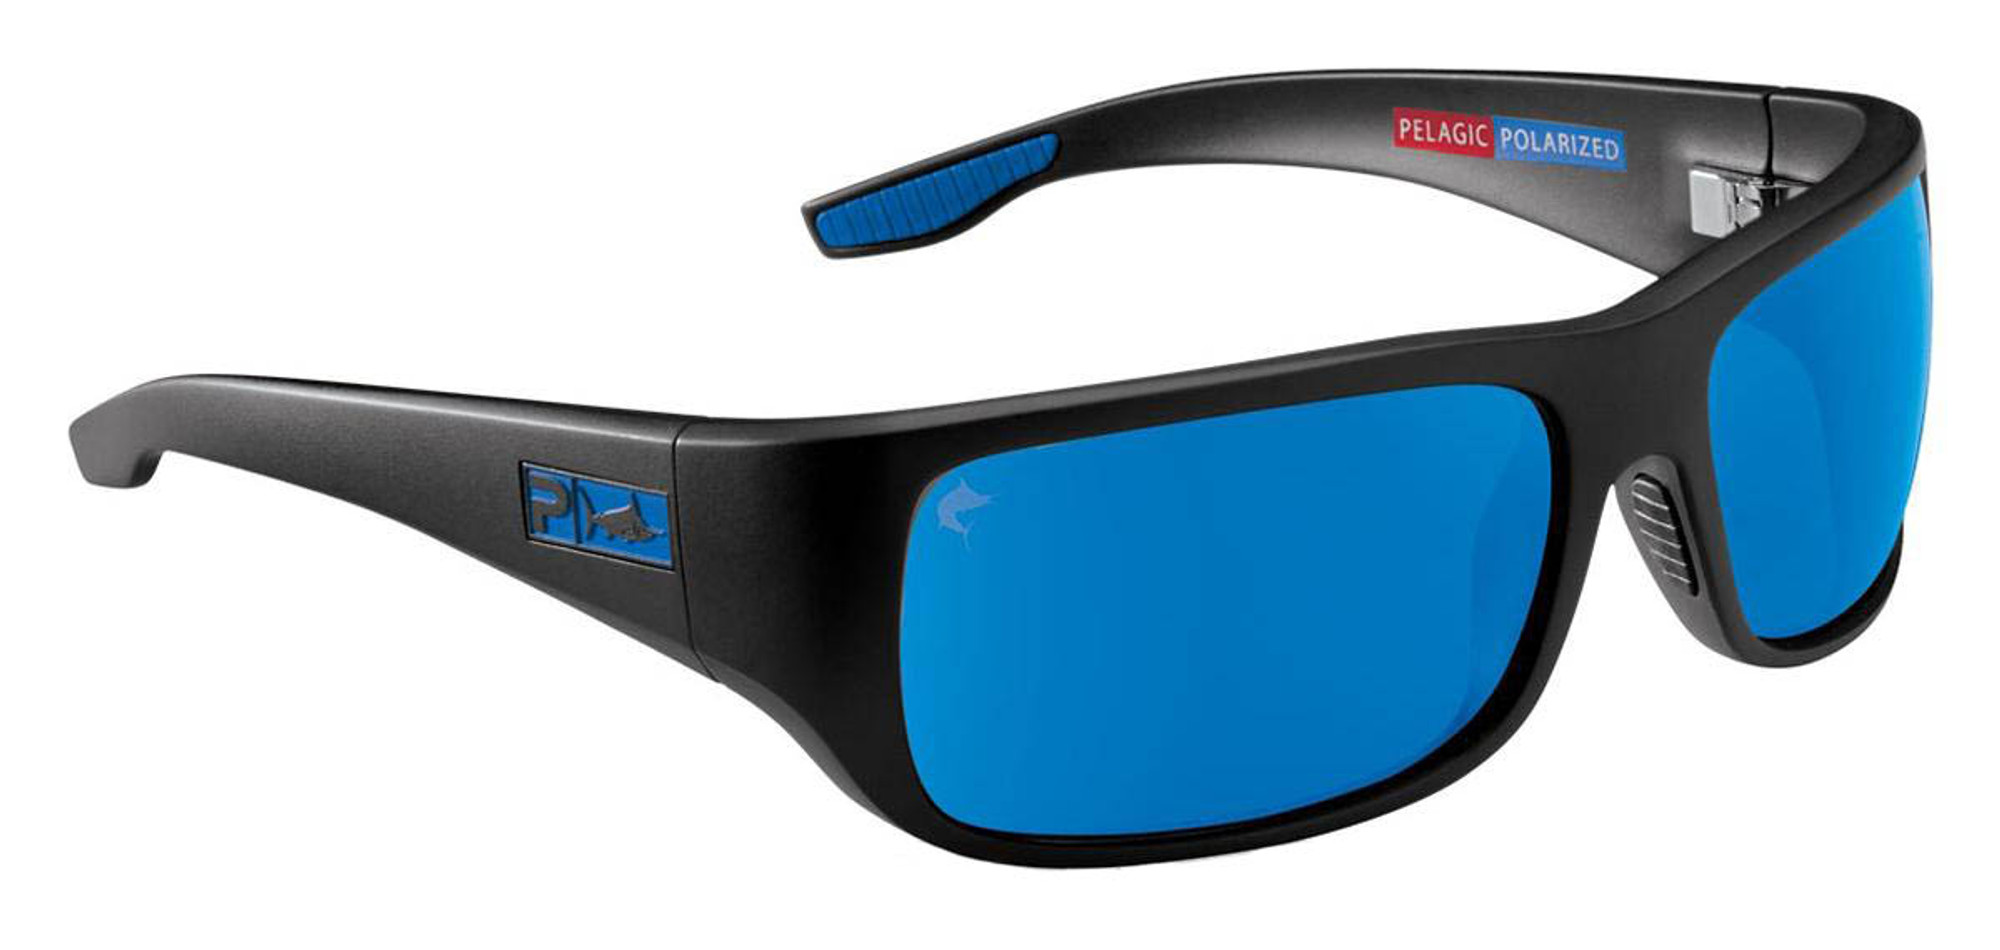 Pelagic PMG Fish Hook Polaraized Sunglasses - Matte Black Frame / Blue Glass Lenses